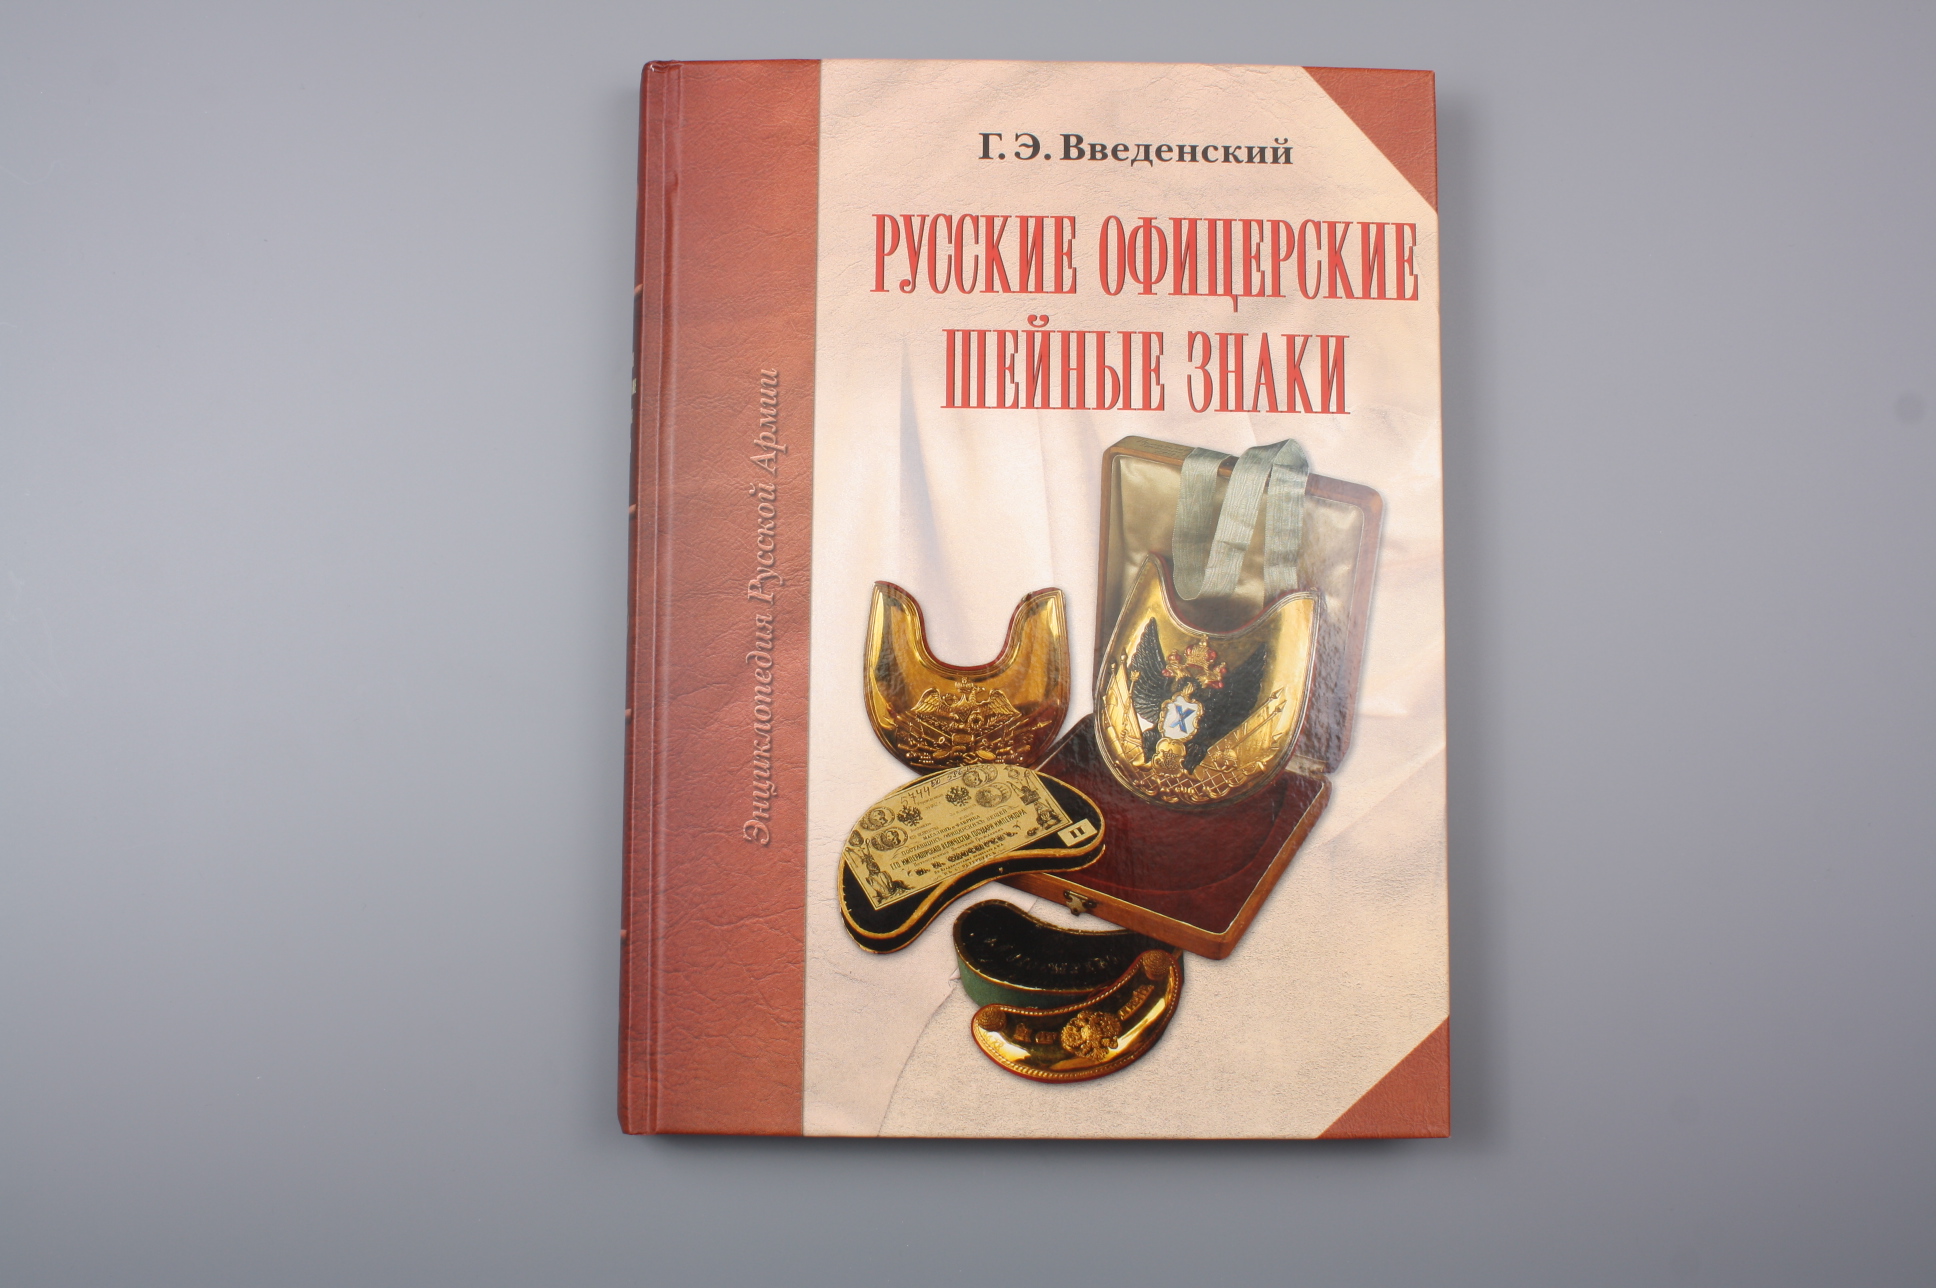 Книга "Русские офицерские шейные знаки", Россия.